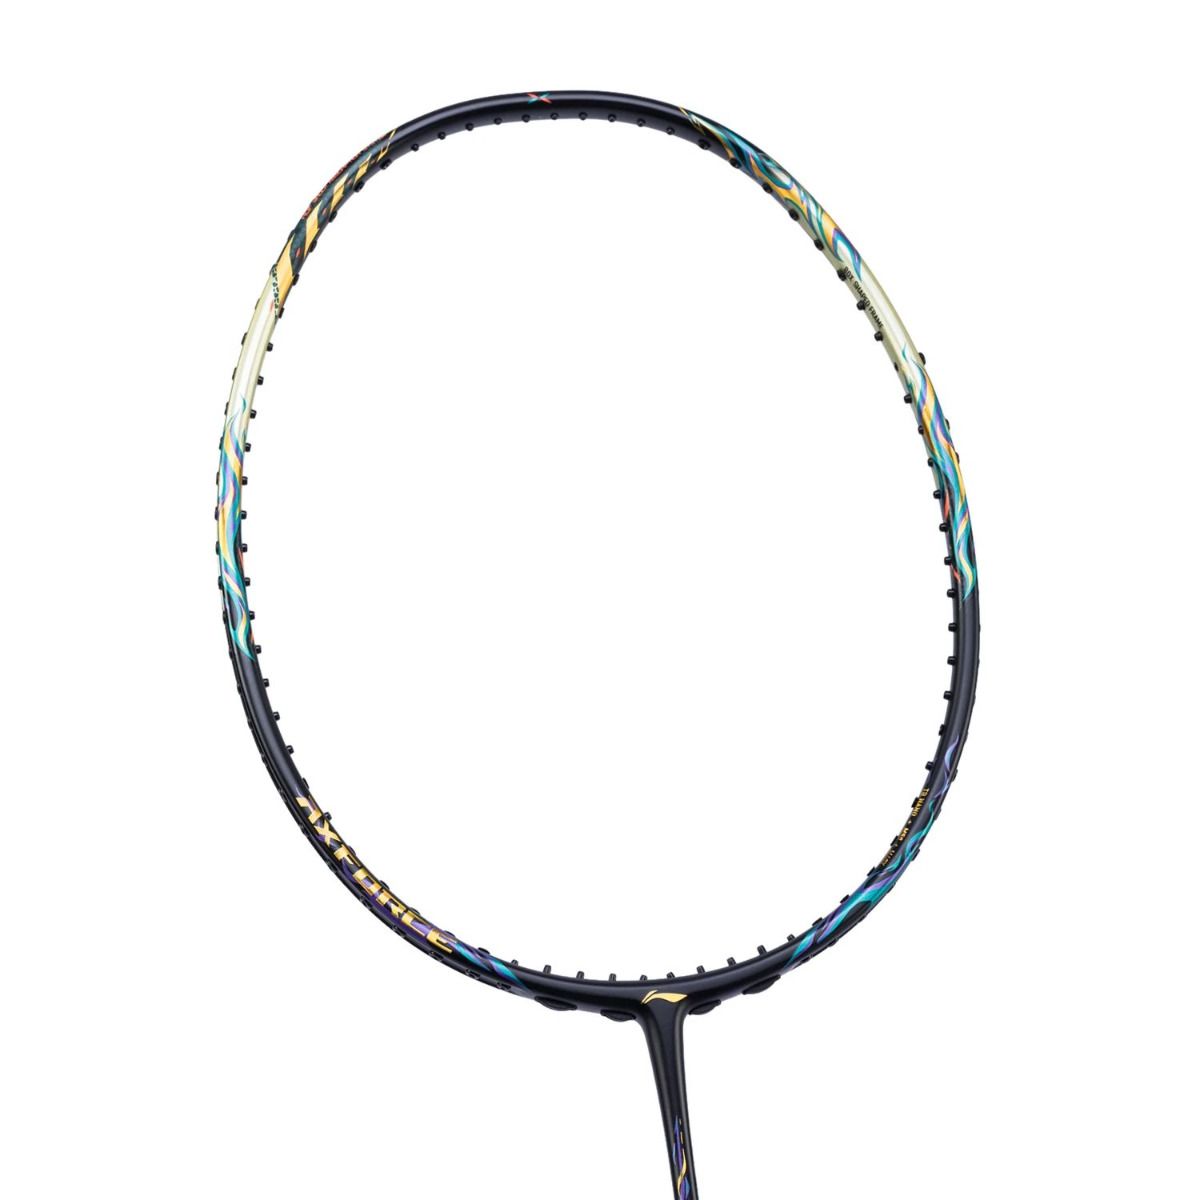 Badminton Racket – AxForce 100 Qilin